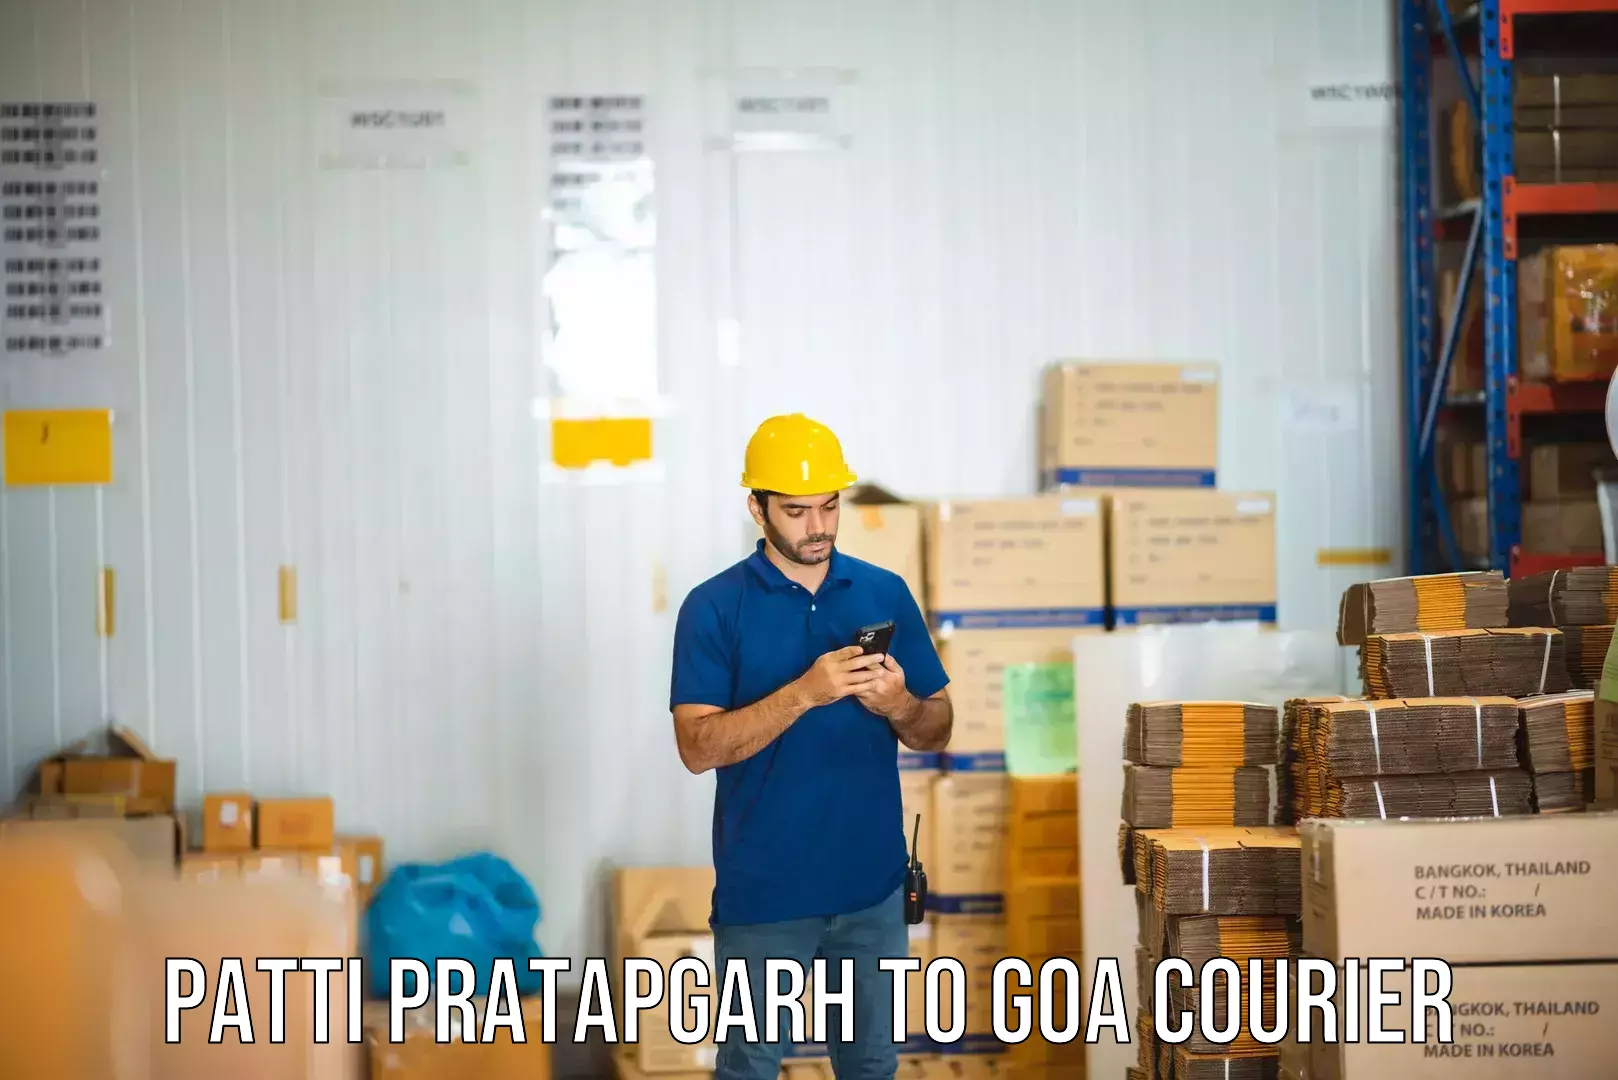 Courier rate comparison Patti Pratapgarh to Ponda